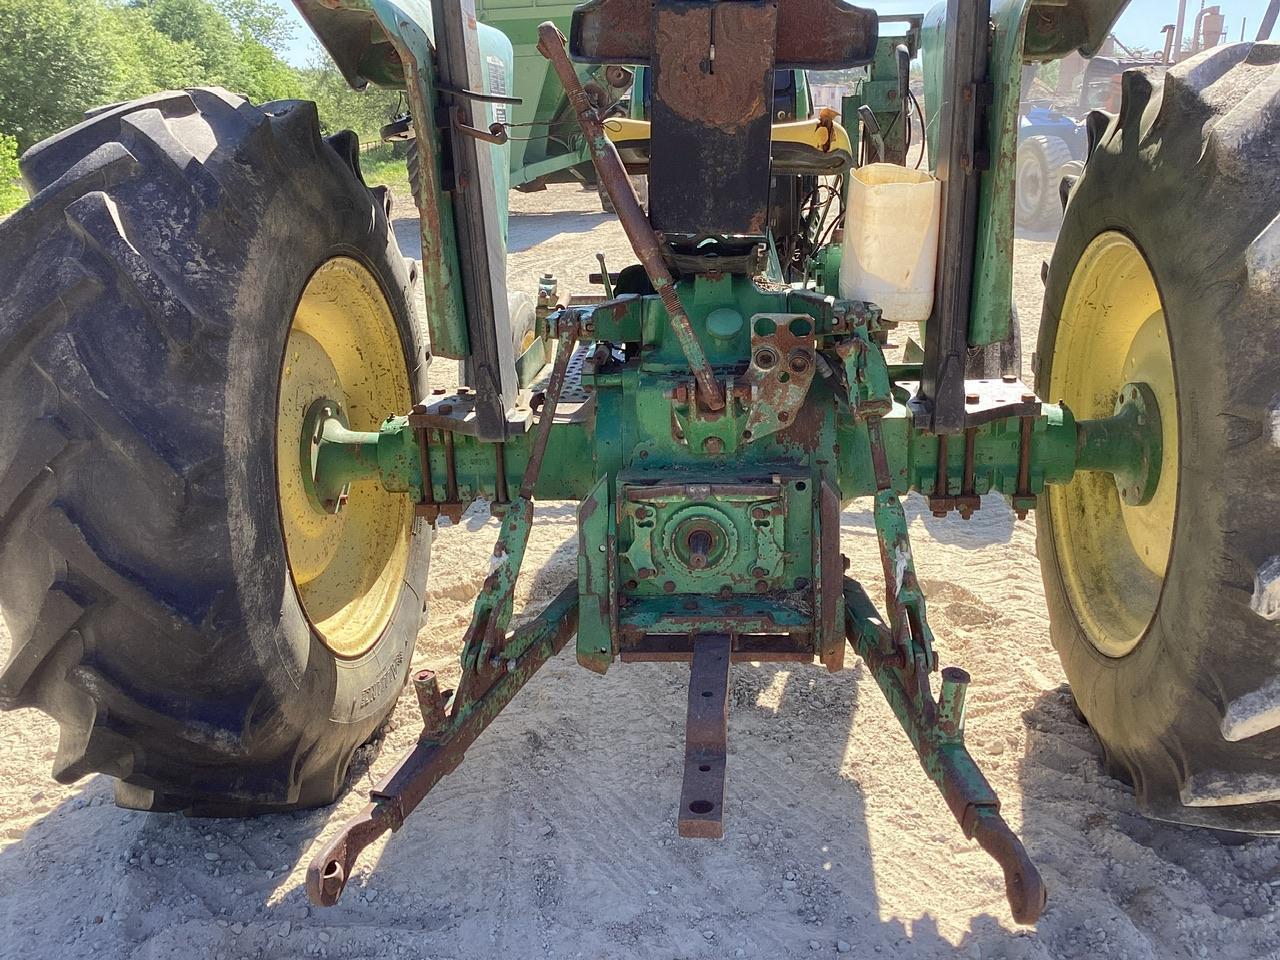 John Deere 2355 Tractor